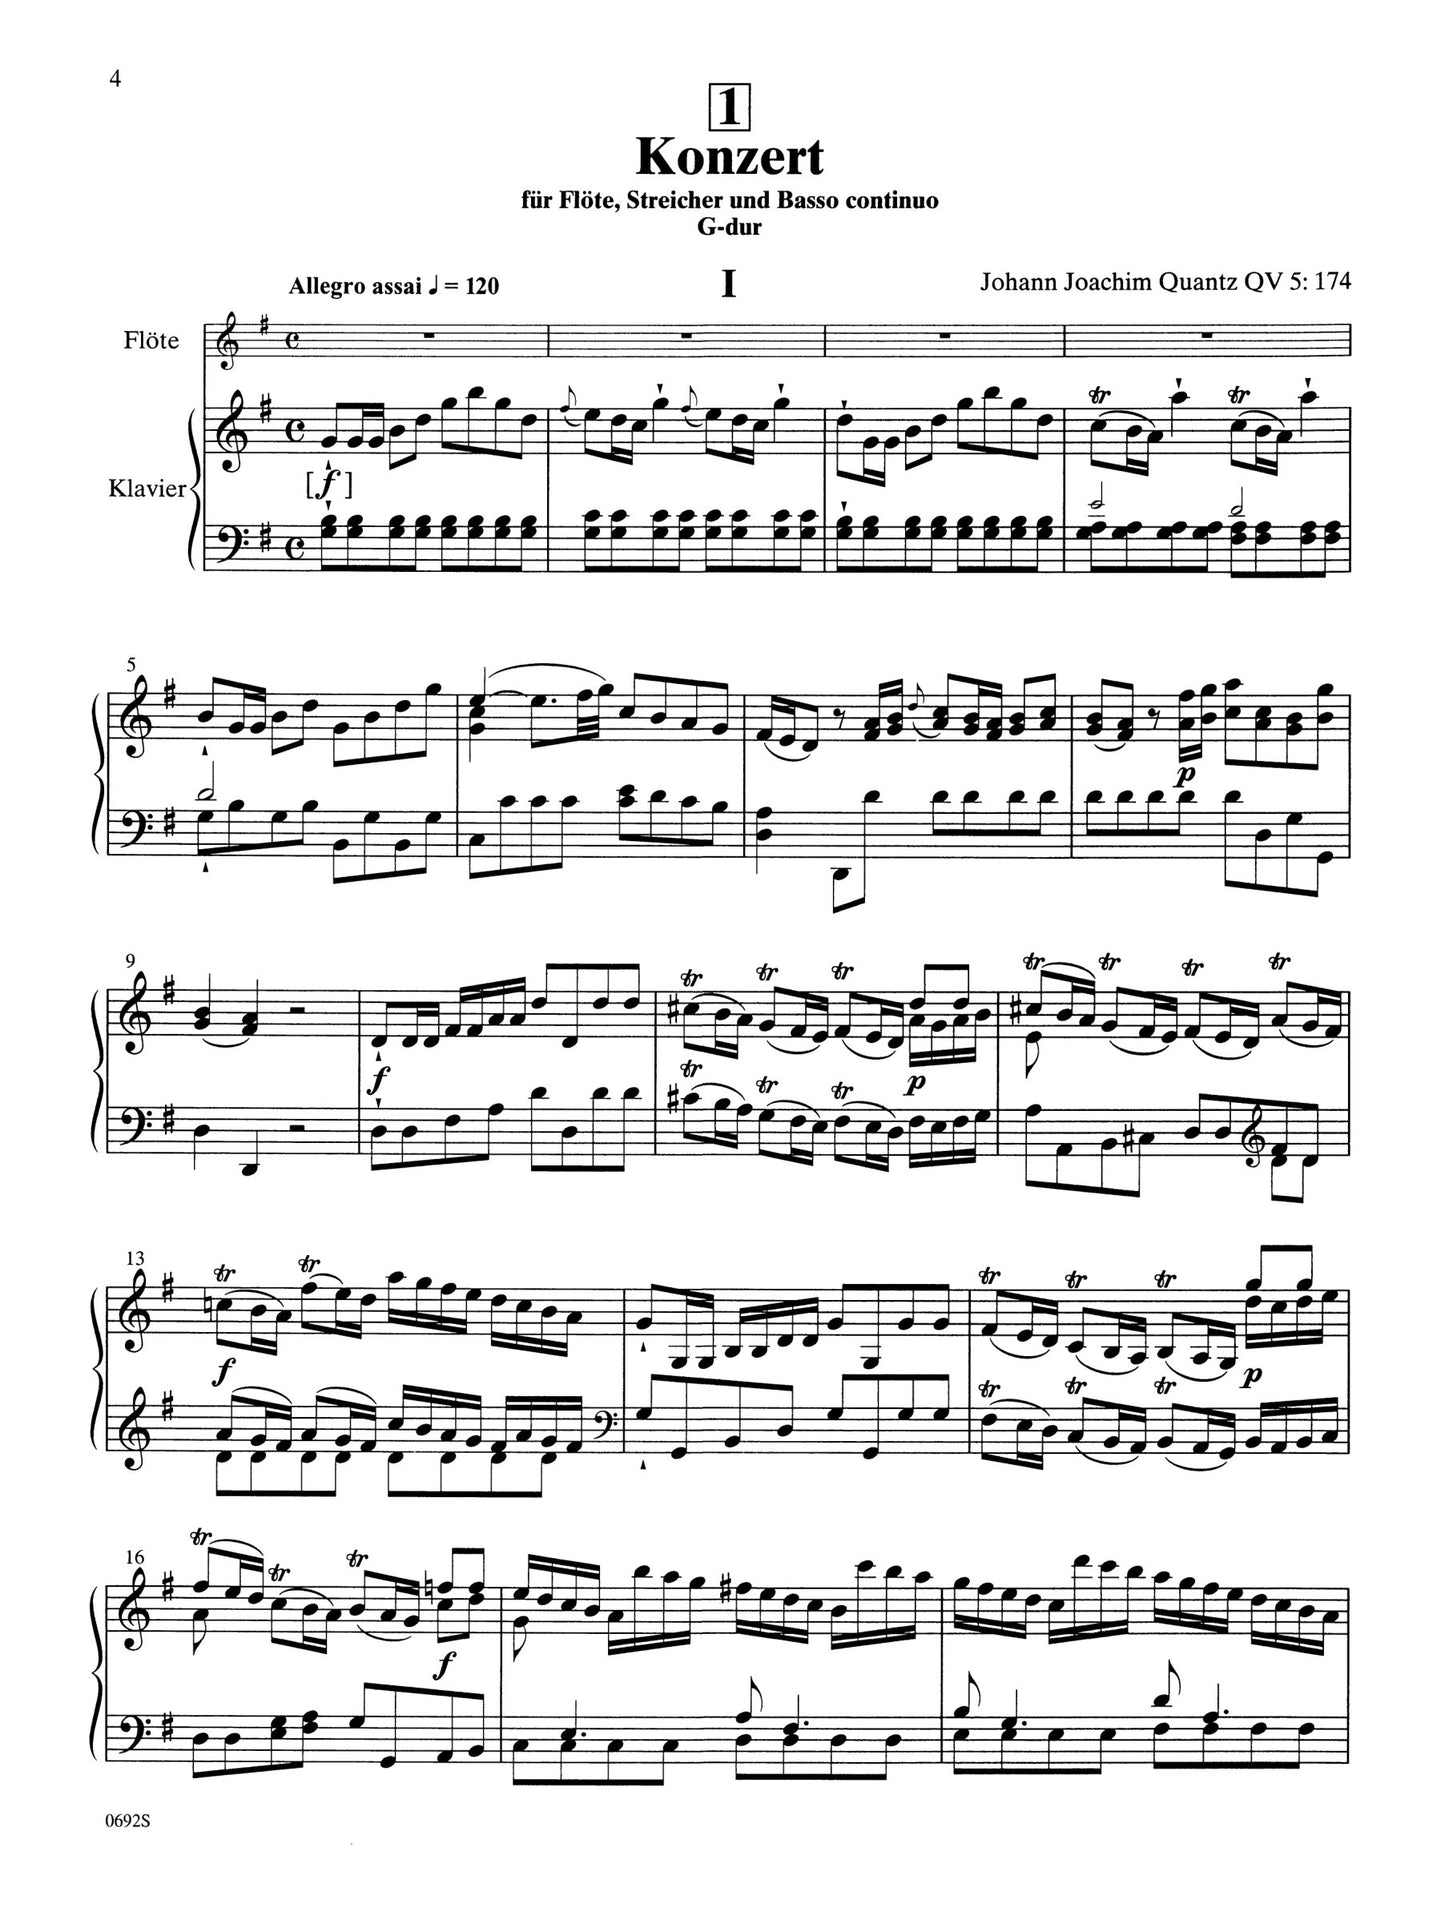 Suzuki Flute School - Volume 8 Piano Accompaniment Book